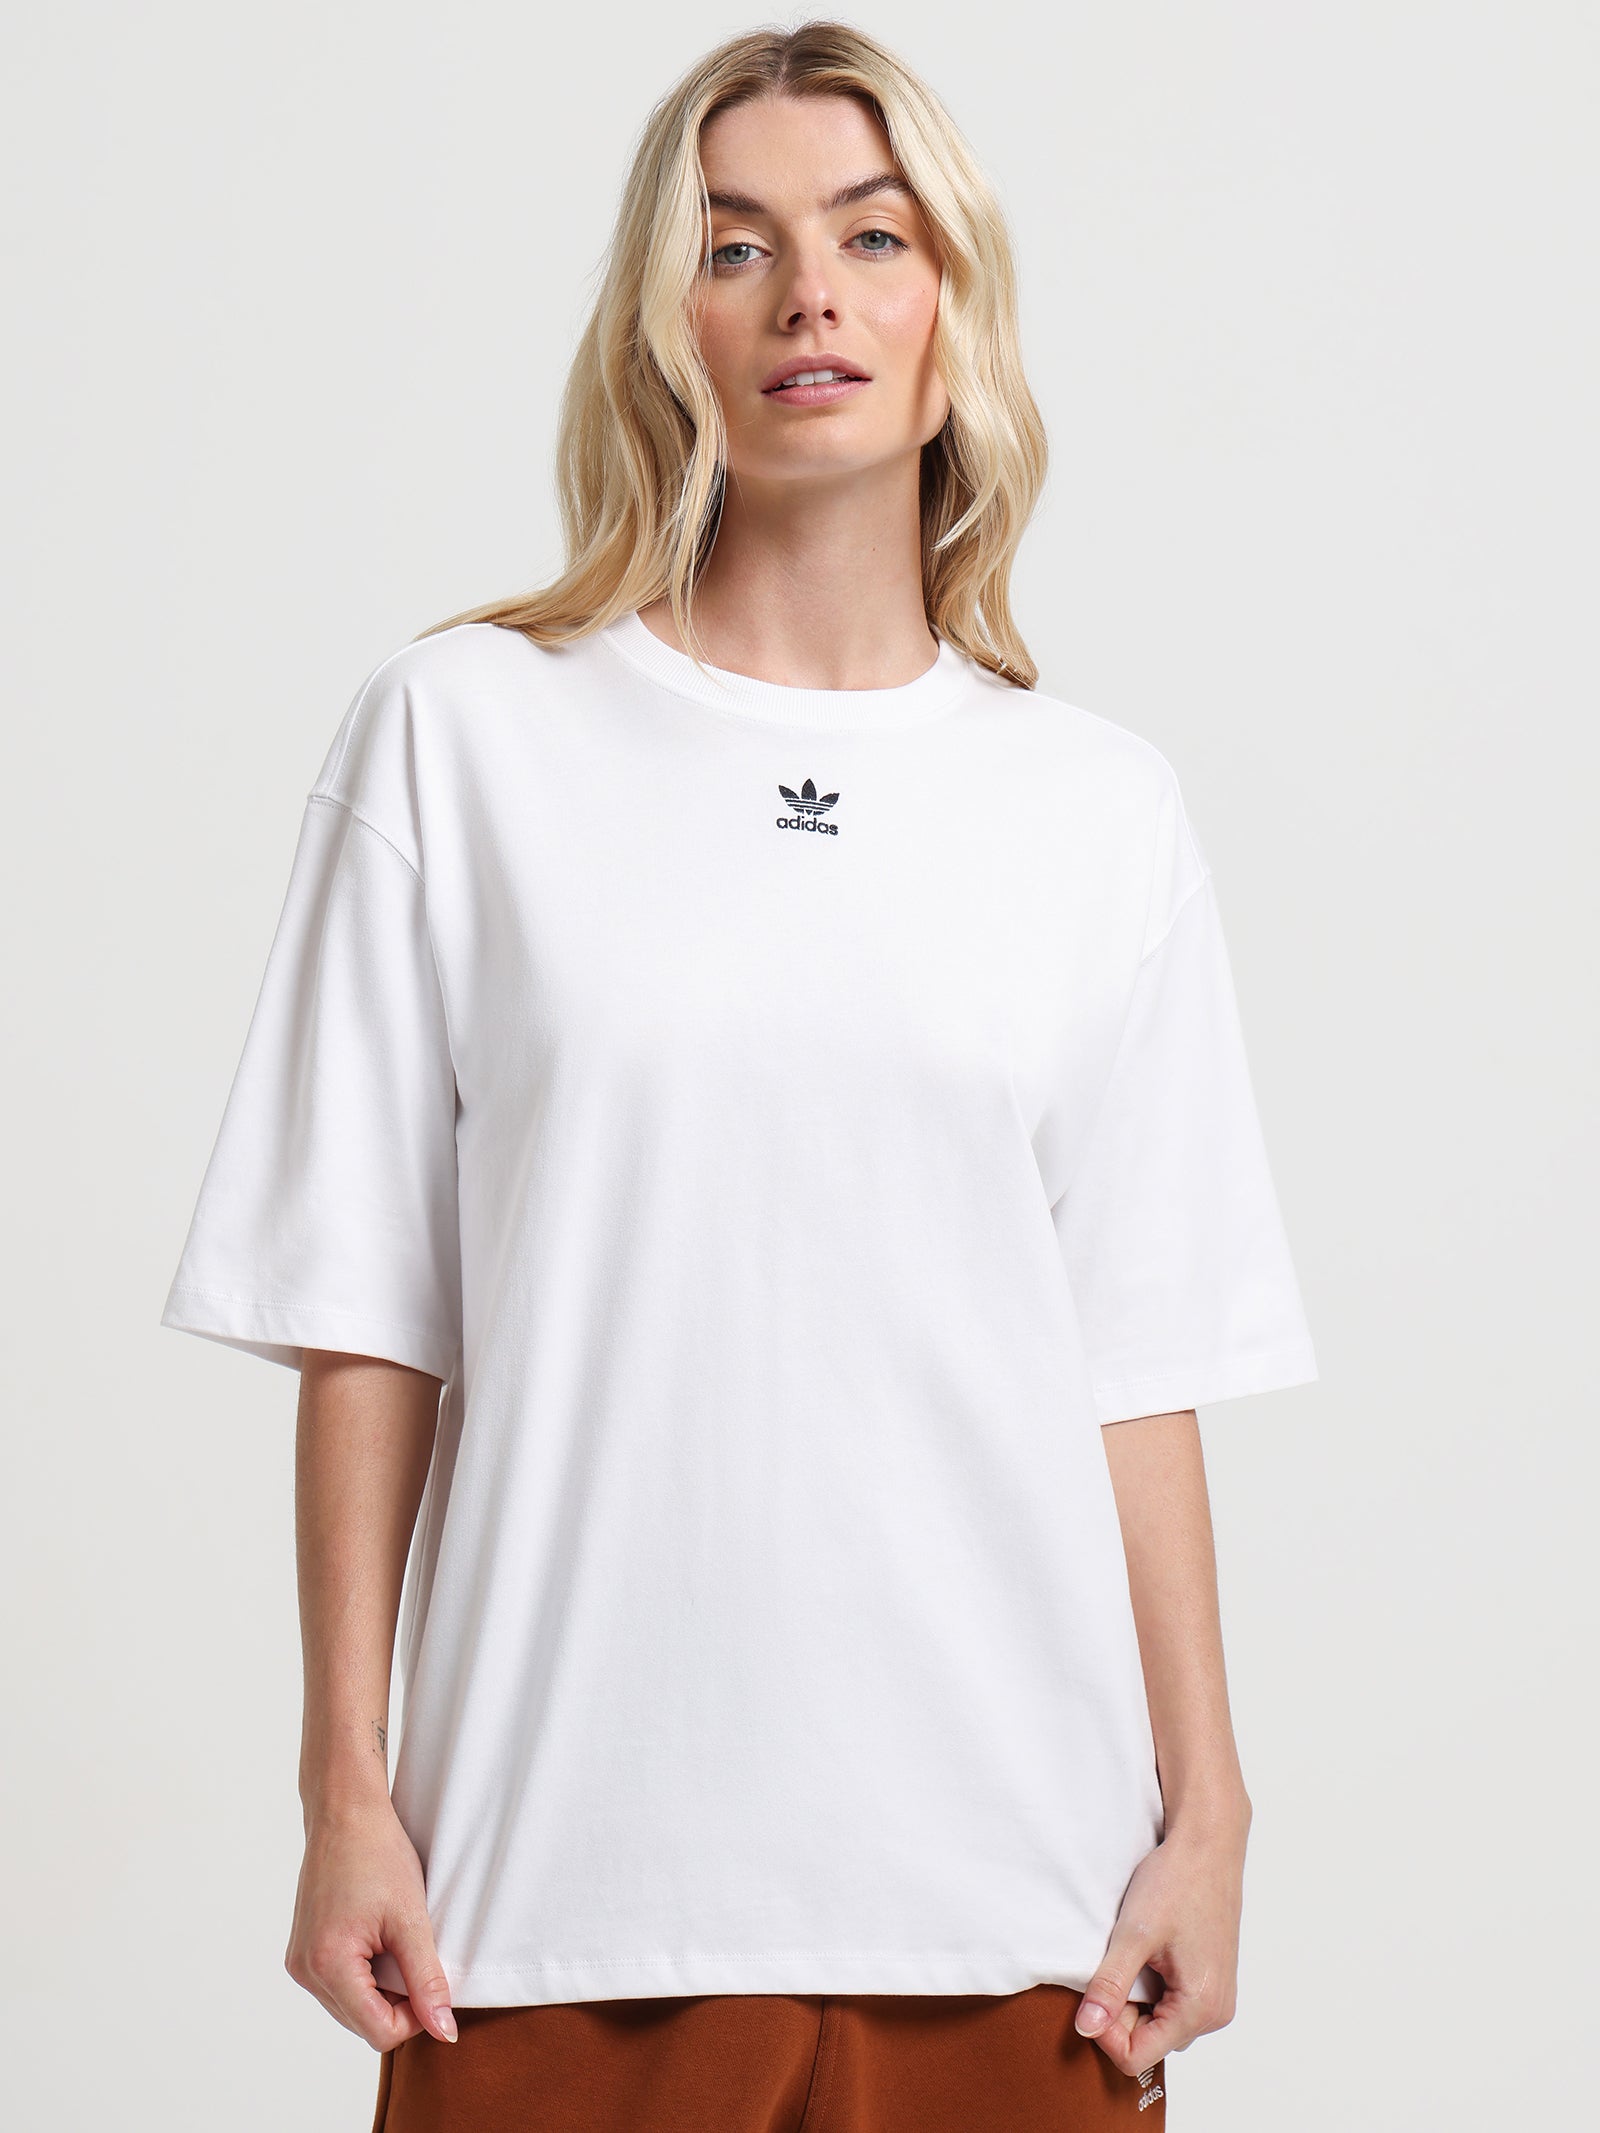 Adicolor Essentials T-Shirt in White - Glue Store